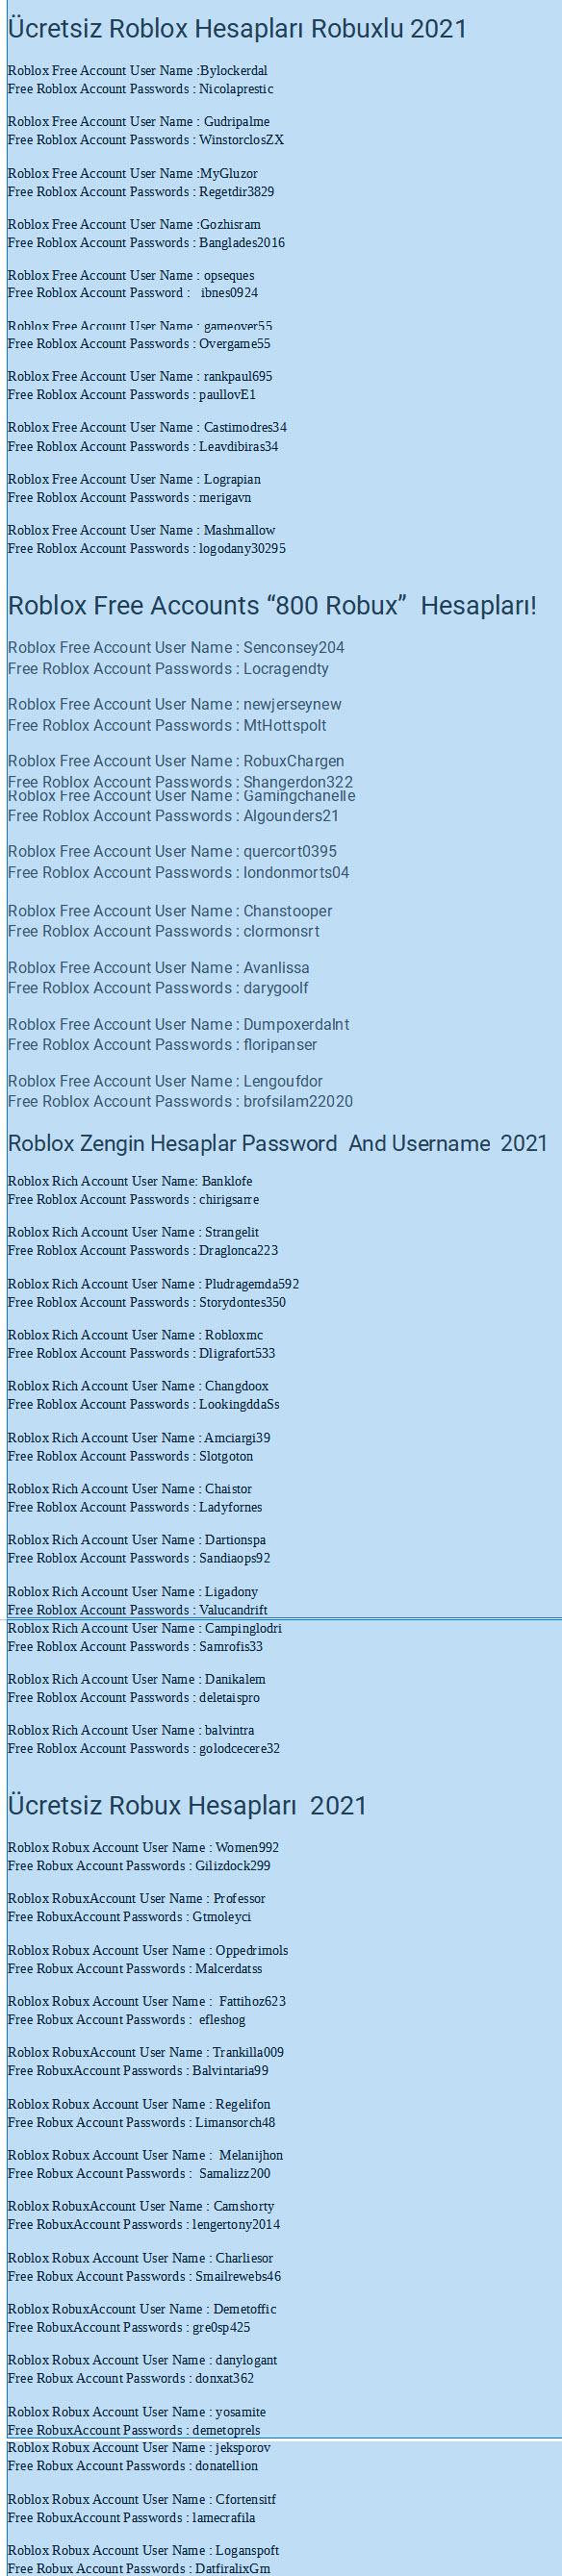 Roblox Ucretsiz Hesaplari Ucretsiz Ve Gercek Parolalar 2021 5